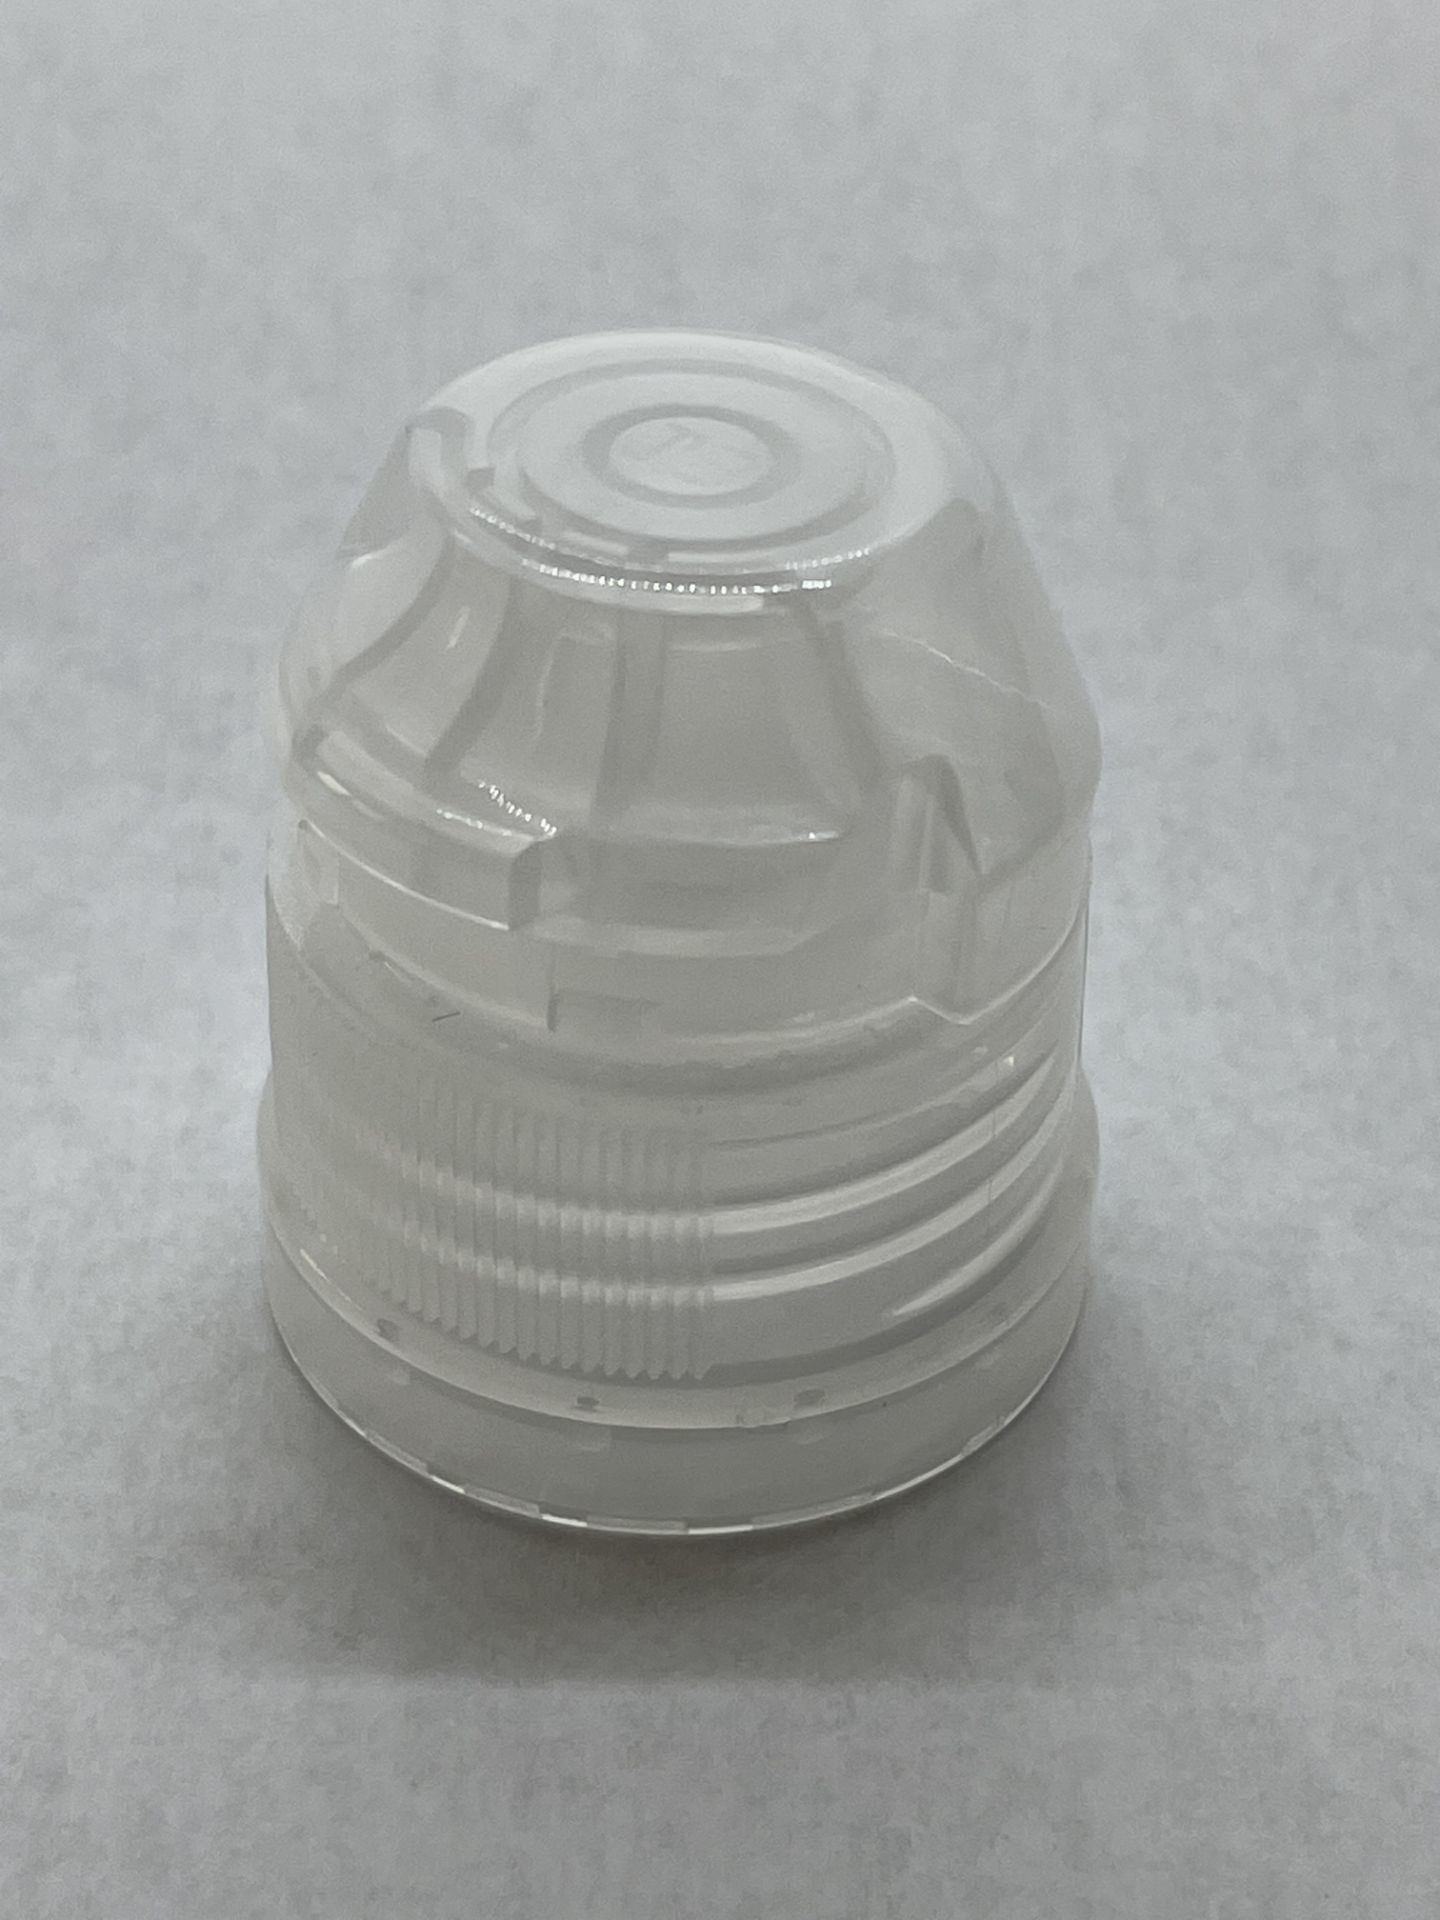 170,000 - Popular Aptar Water bottle sport cap for 16 oz bottle, 28-410 Threading - Image 3 of 6